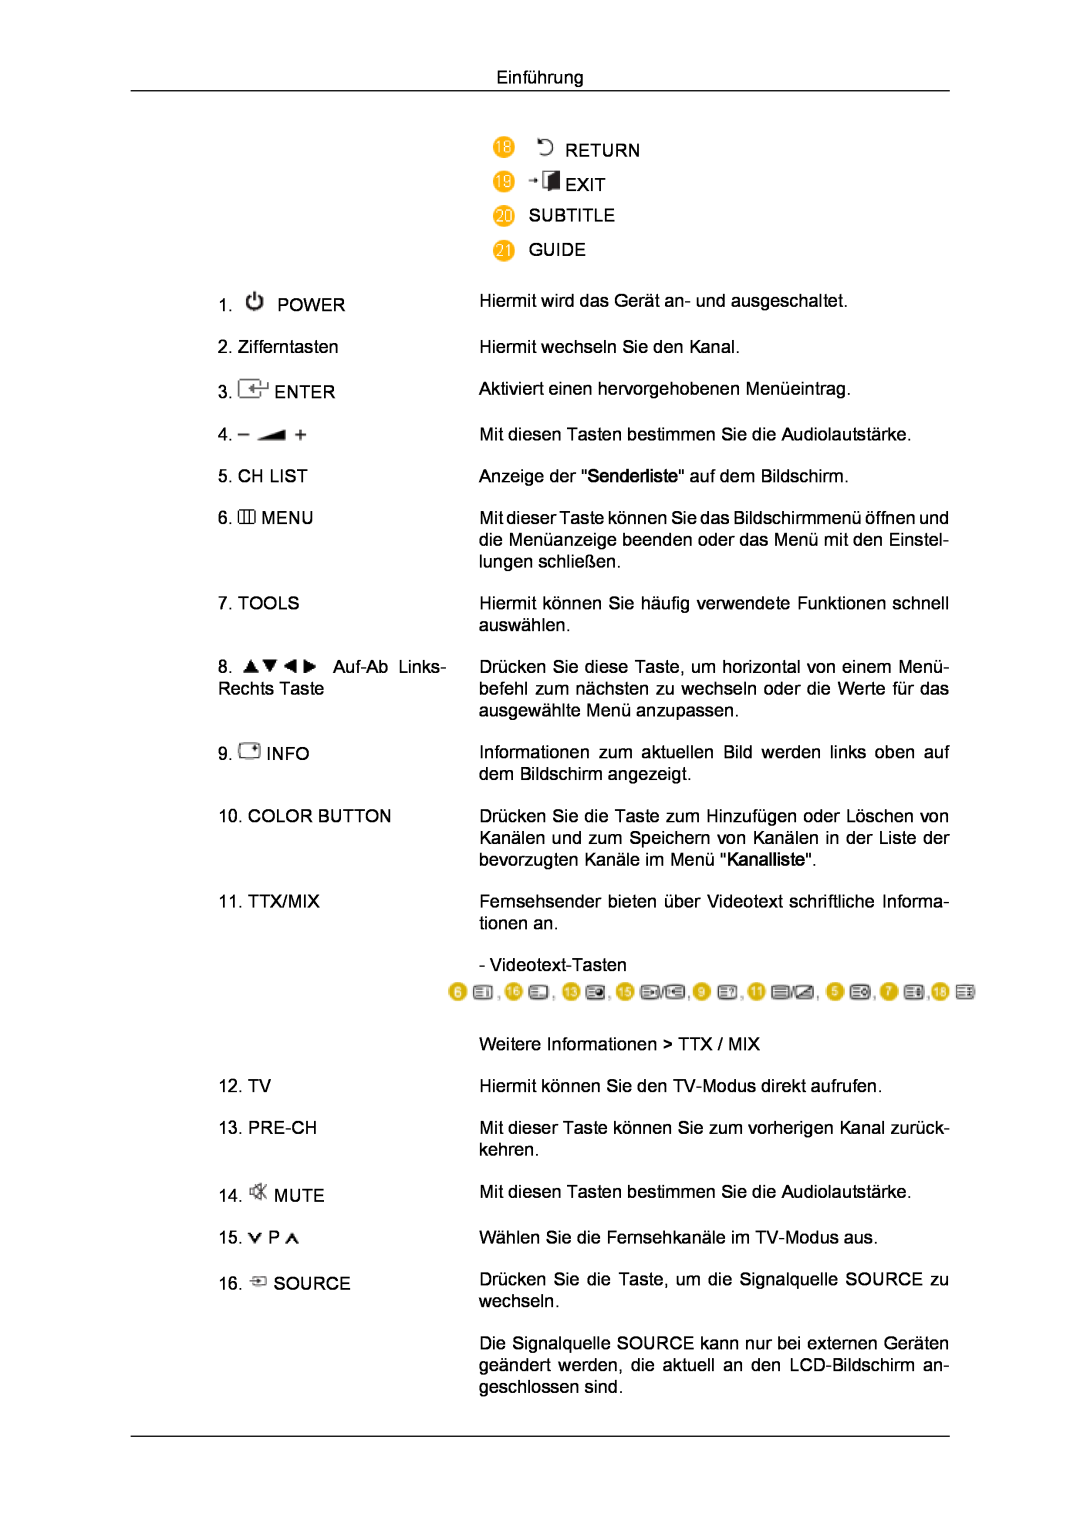 Samsung LS24TDDSUV/EN Einführung, POWER 2. Zifferntasten 3. ENTER, CH LIST 6. MENU, Return Exit Subtitle Guide, Tools 